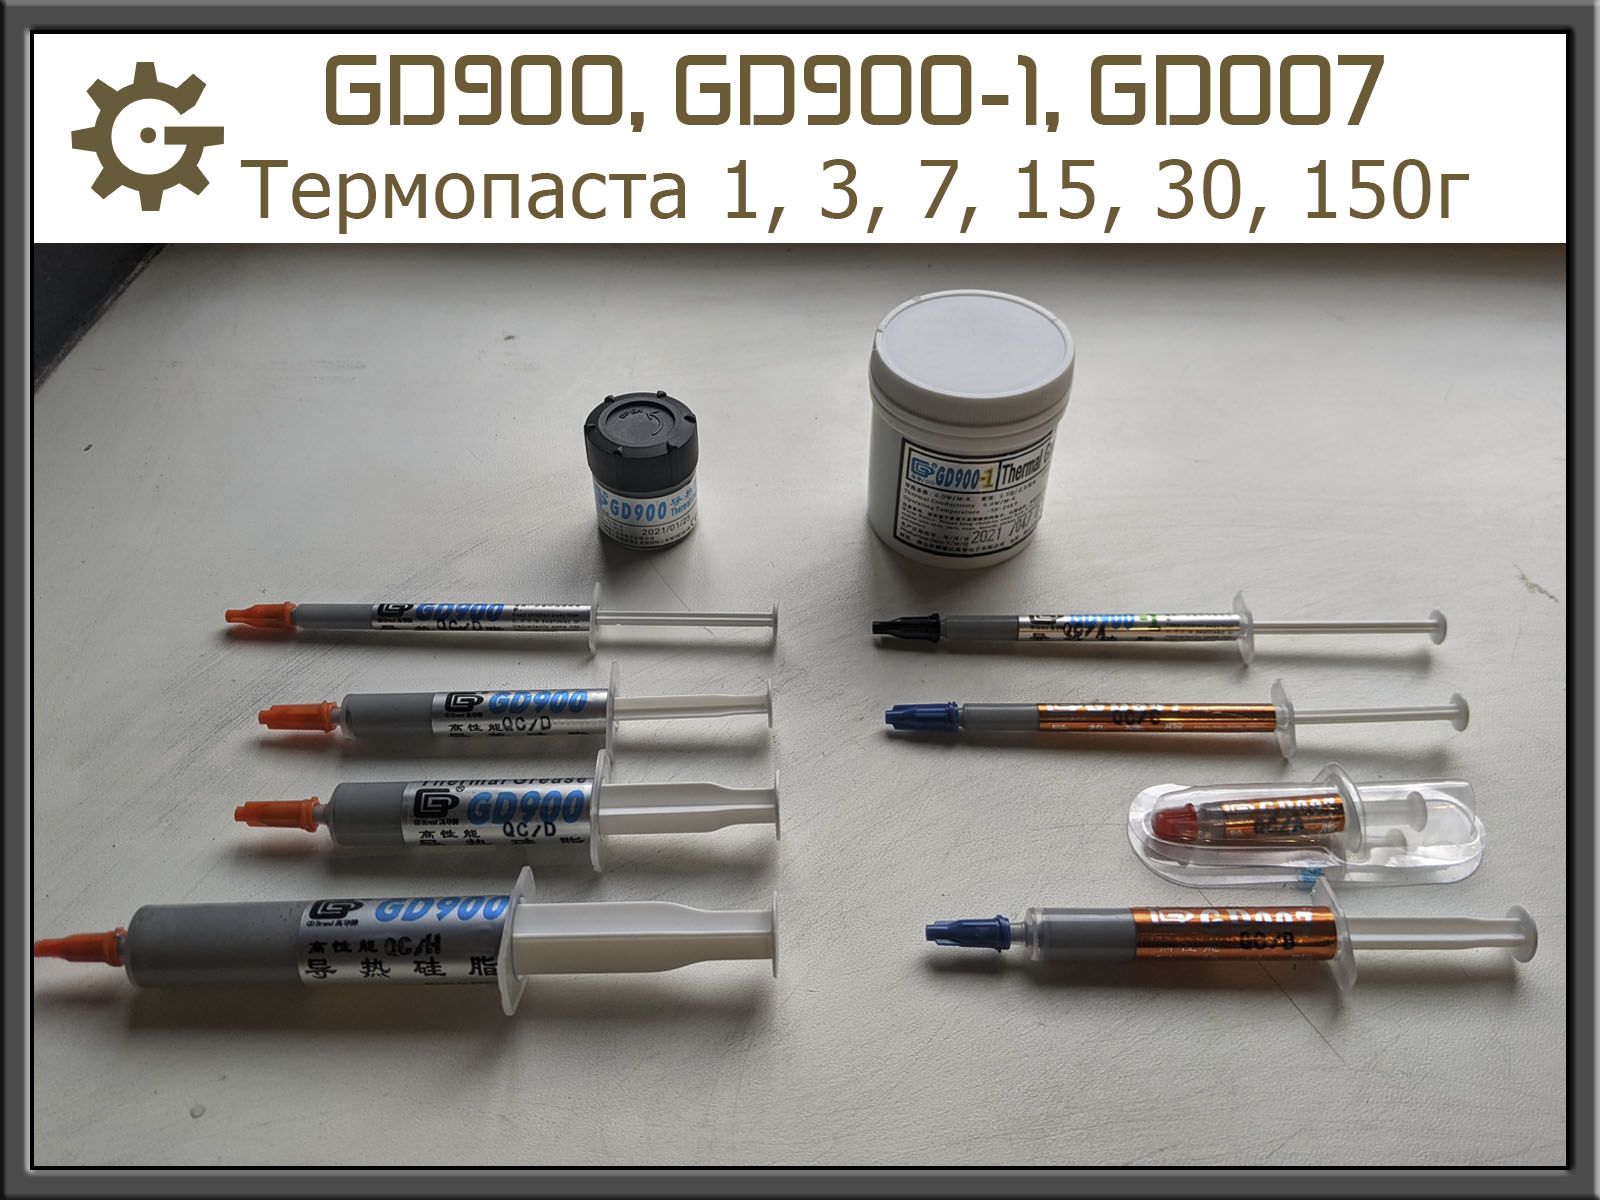 Термопаста GD007 GD900 GD900-1 Шприц 1г 3г 7г 15г, Банка 30г 150г ОПТ